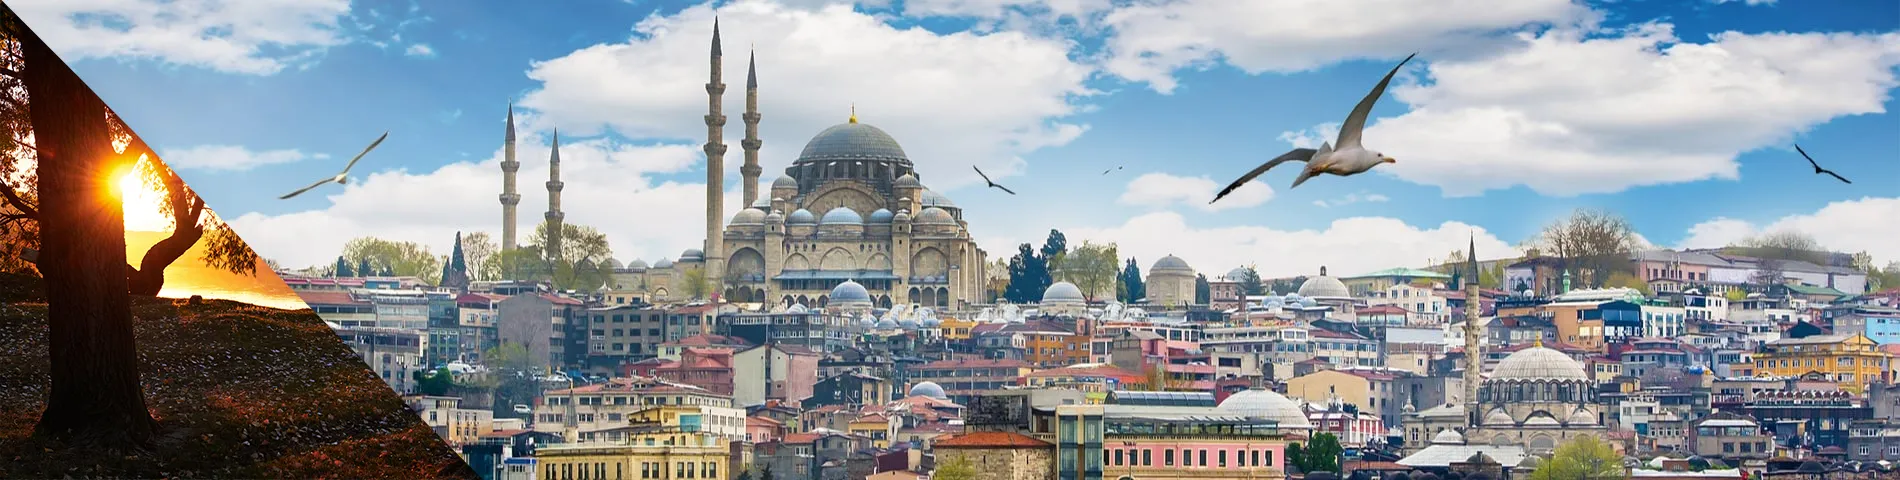 Стамбул - Послеобеденное время